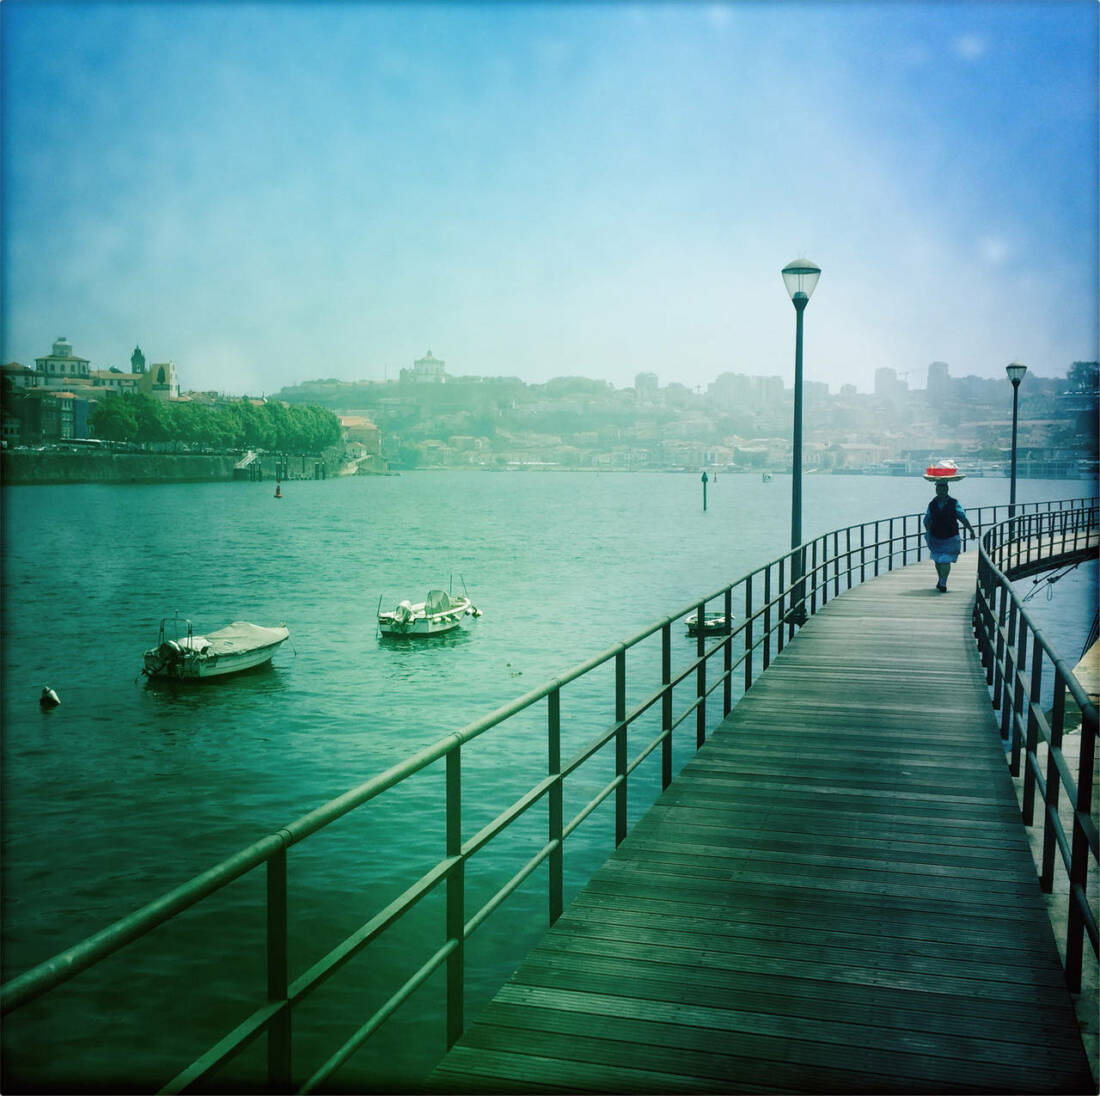 Porto aus der Serie: Westeuropa im Polaroid Stil, 2022, digitale Photographie, 42 × 42 cm